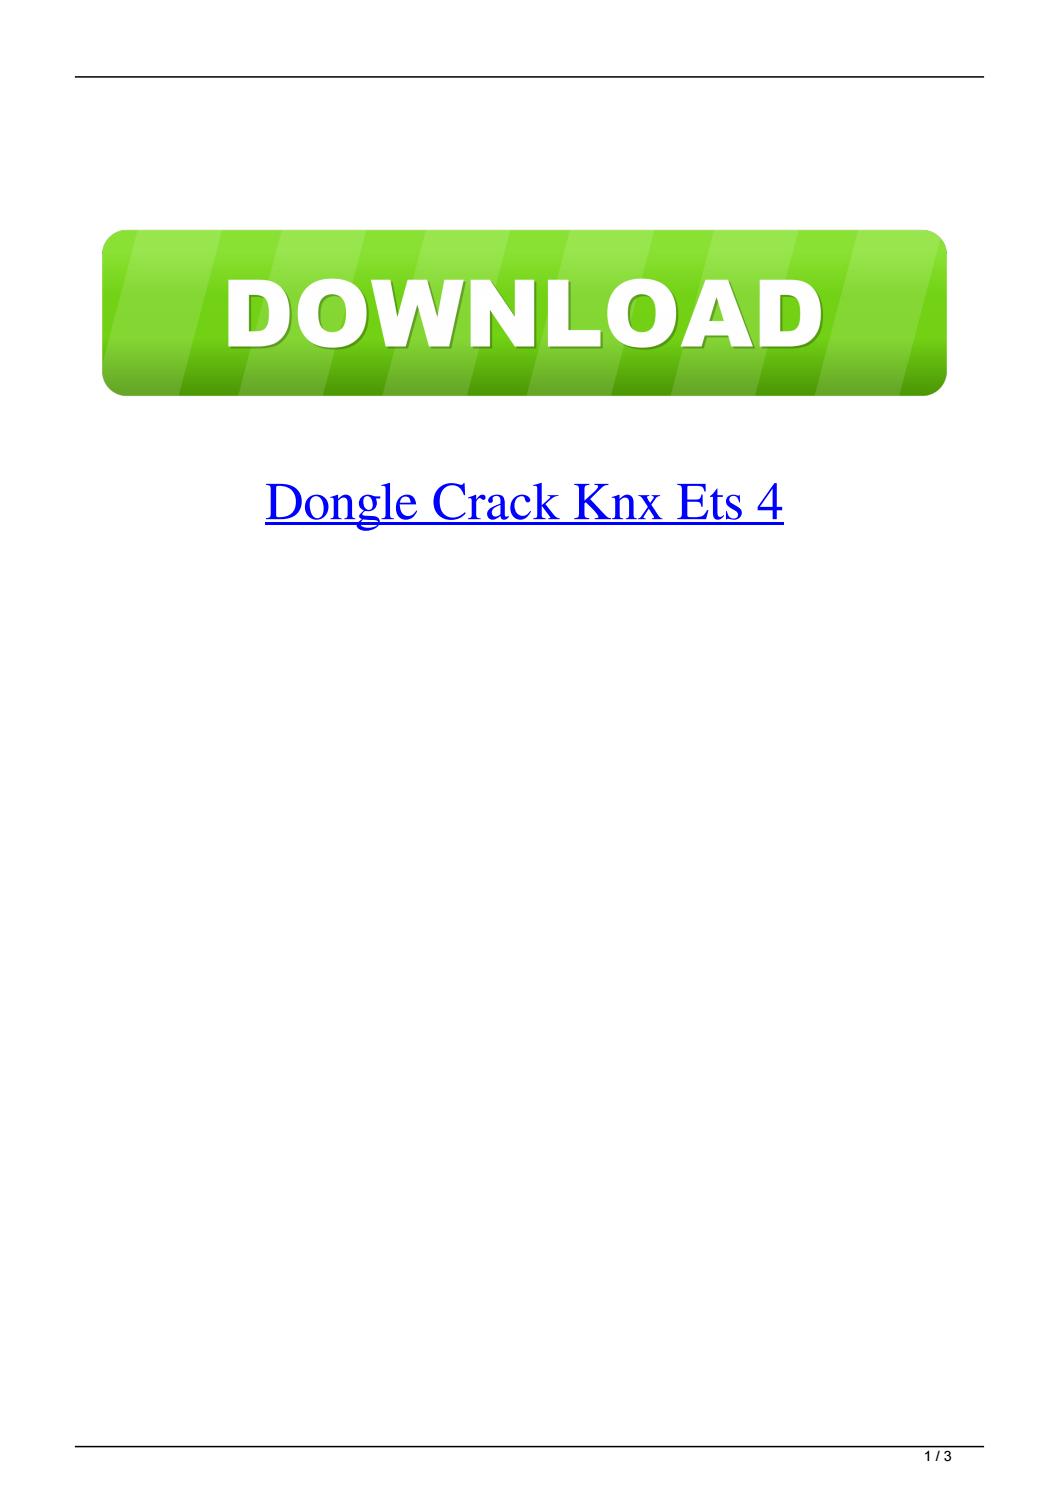 knx ets 5 crack download